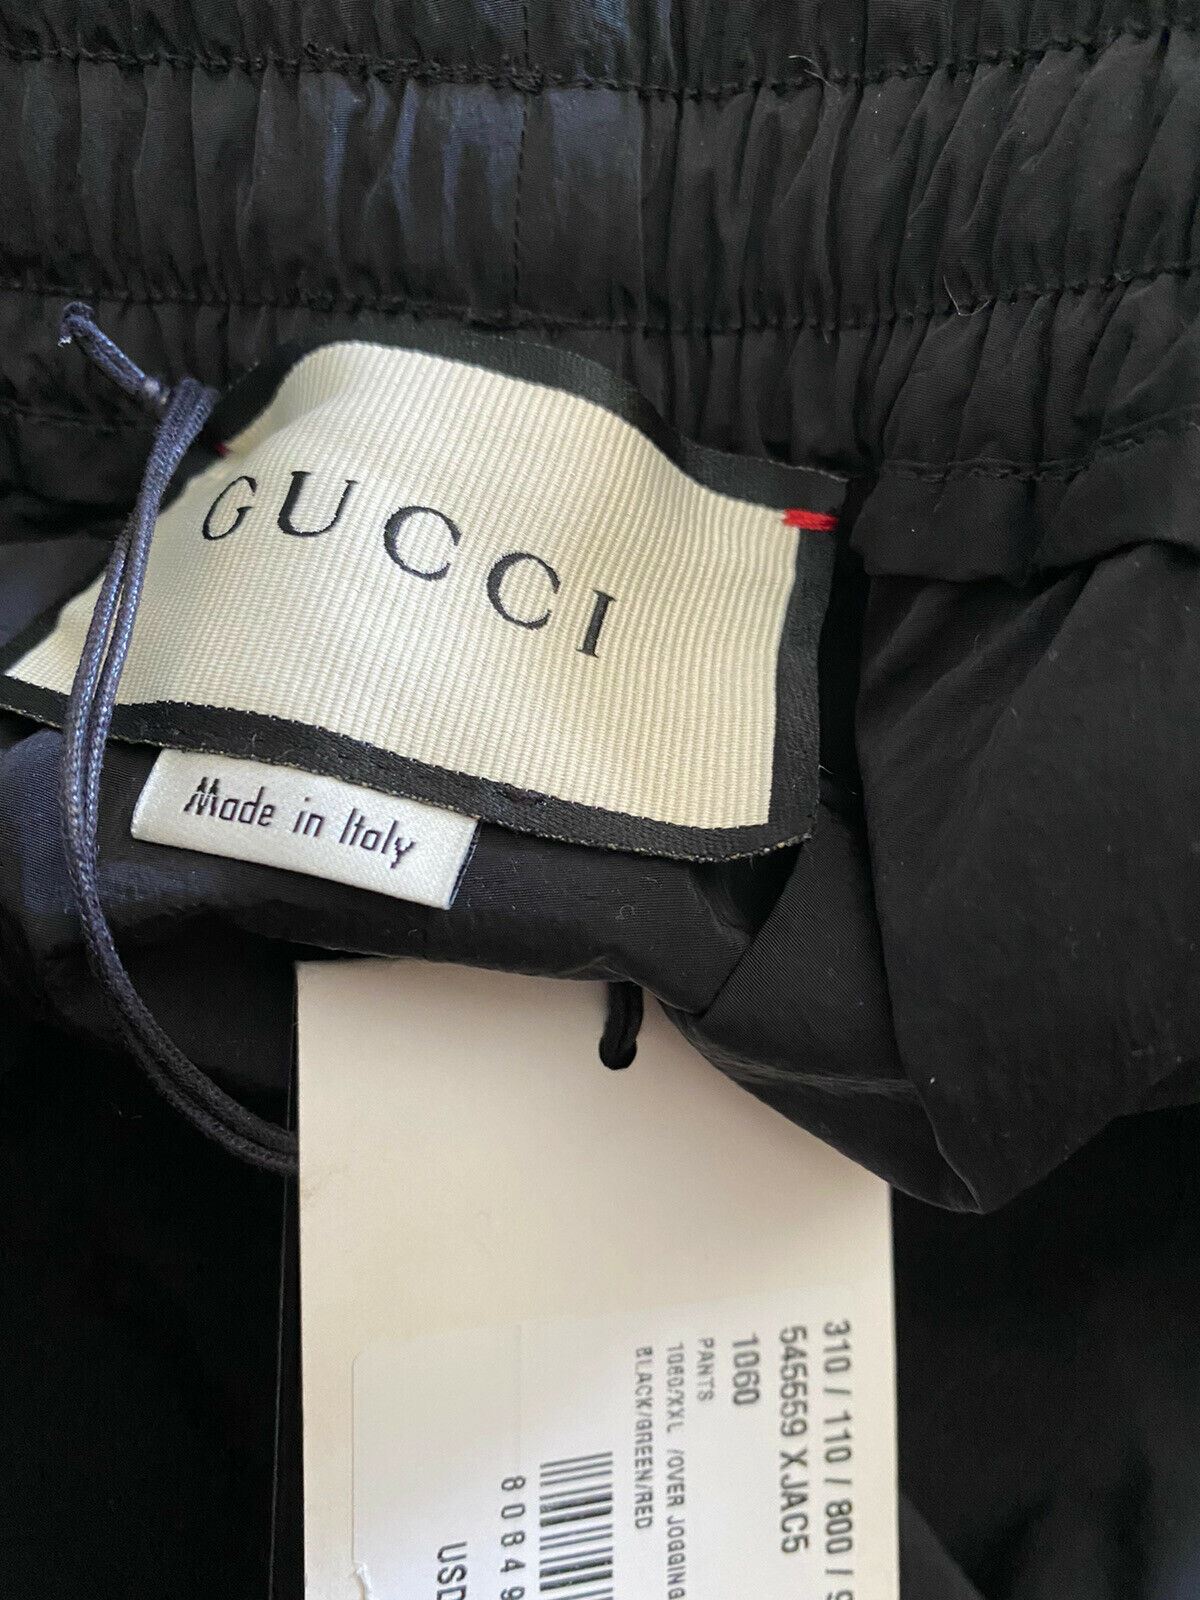 Мужские брюки-джоггеры NWT Gucci черные/зеленые/красные, размер XXL, Италия